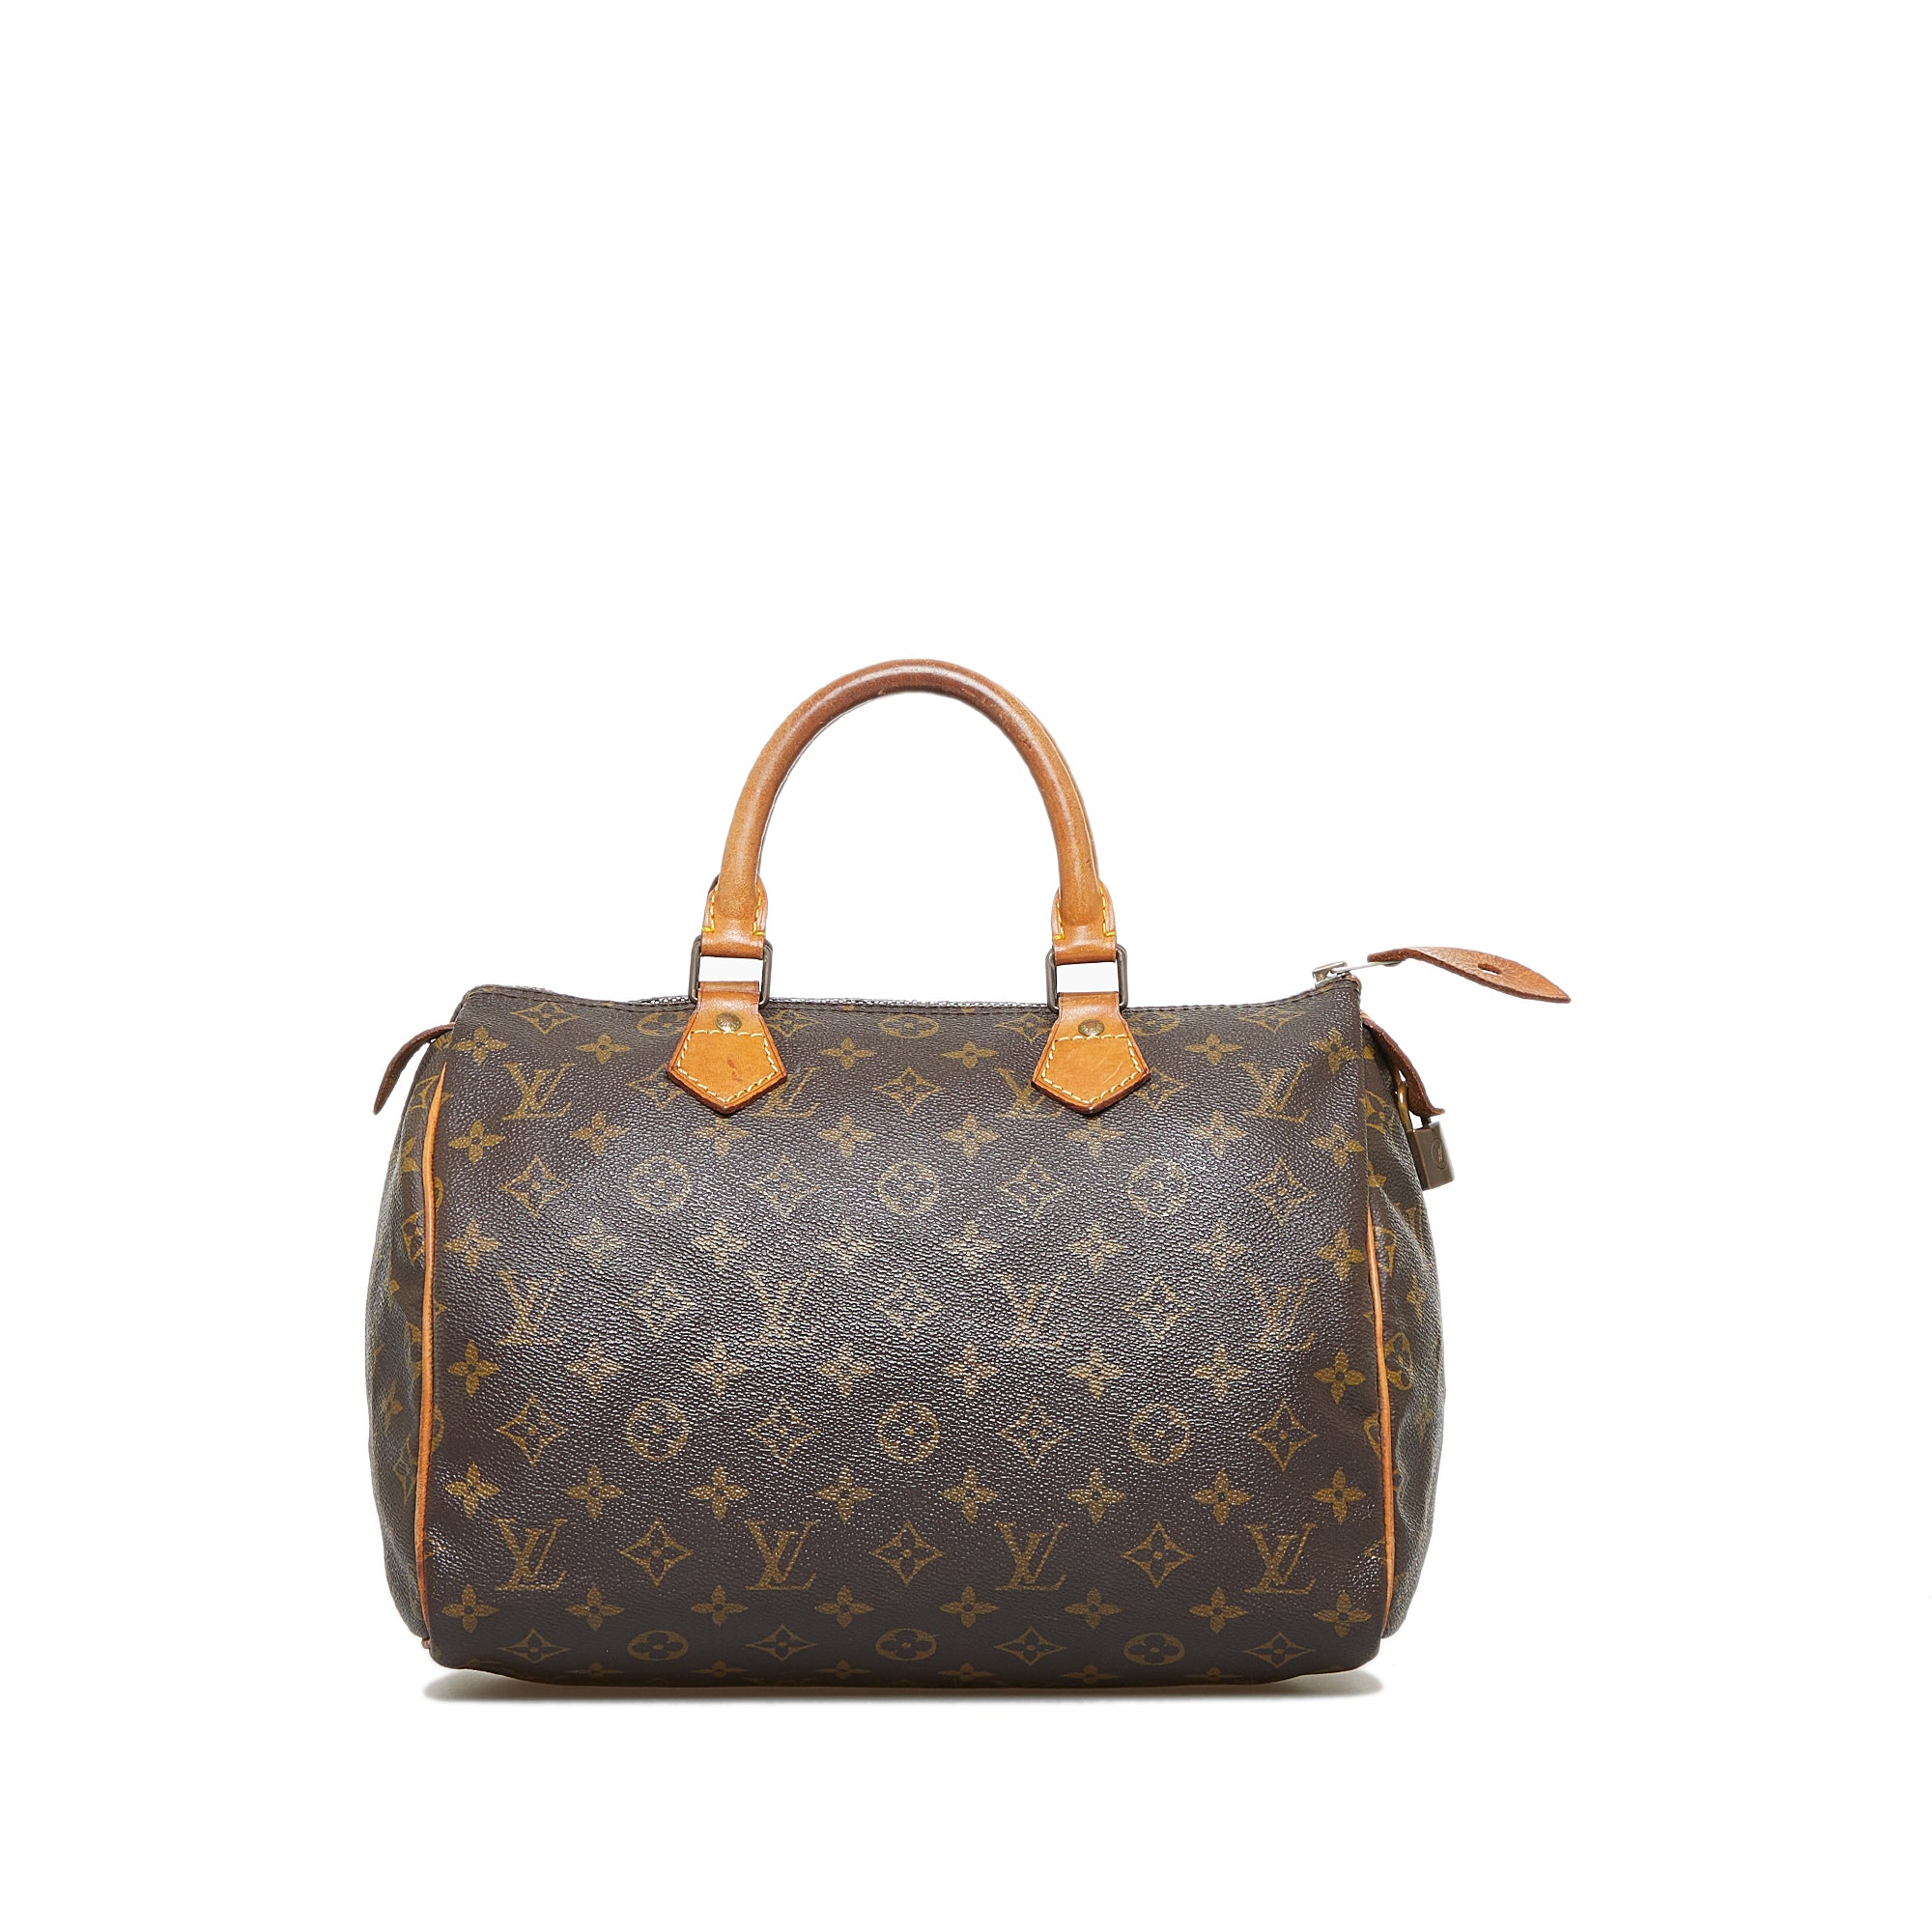 Louis Vuitton Monogram Speedy 30 Boston Bag (Pre-Owned)